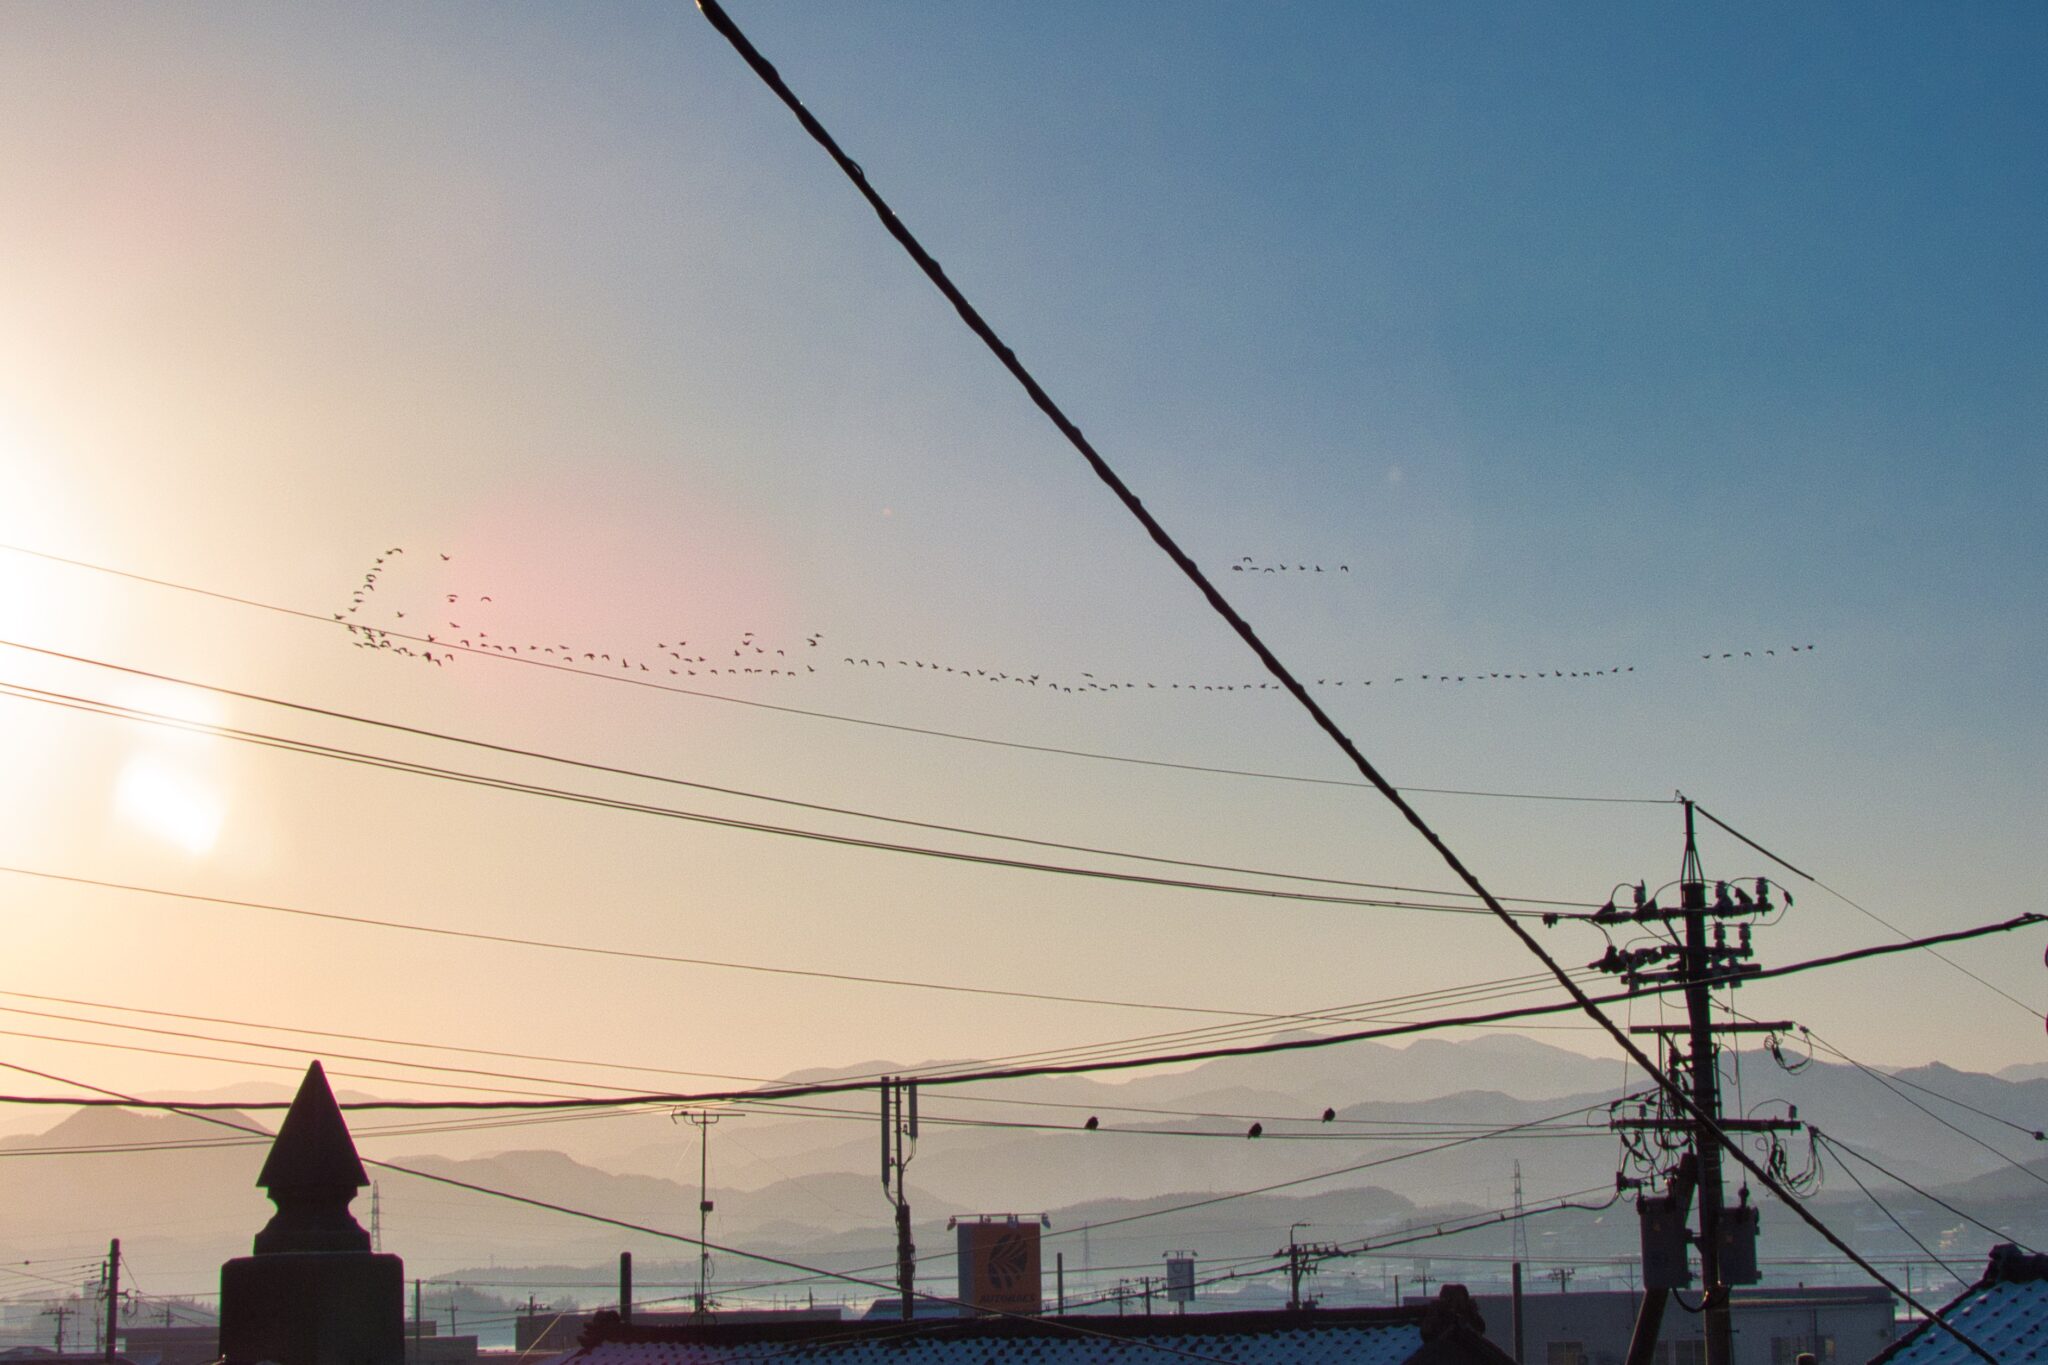 早朝の渡鳥の大群の風景